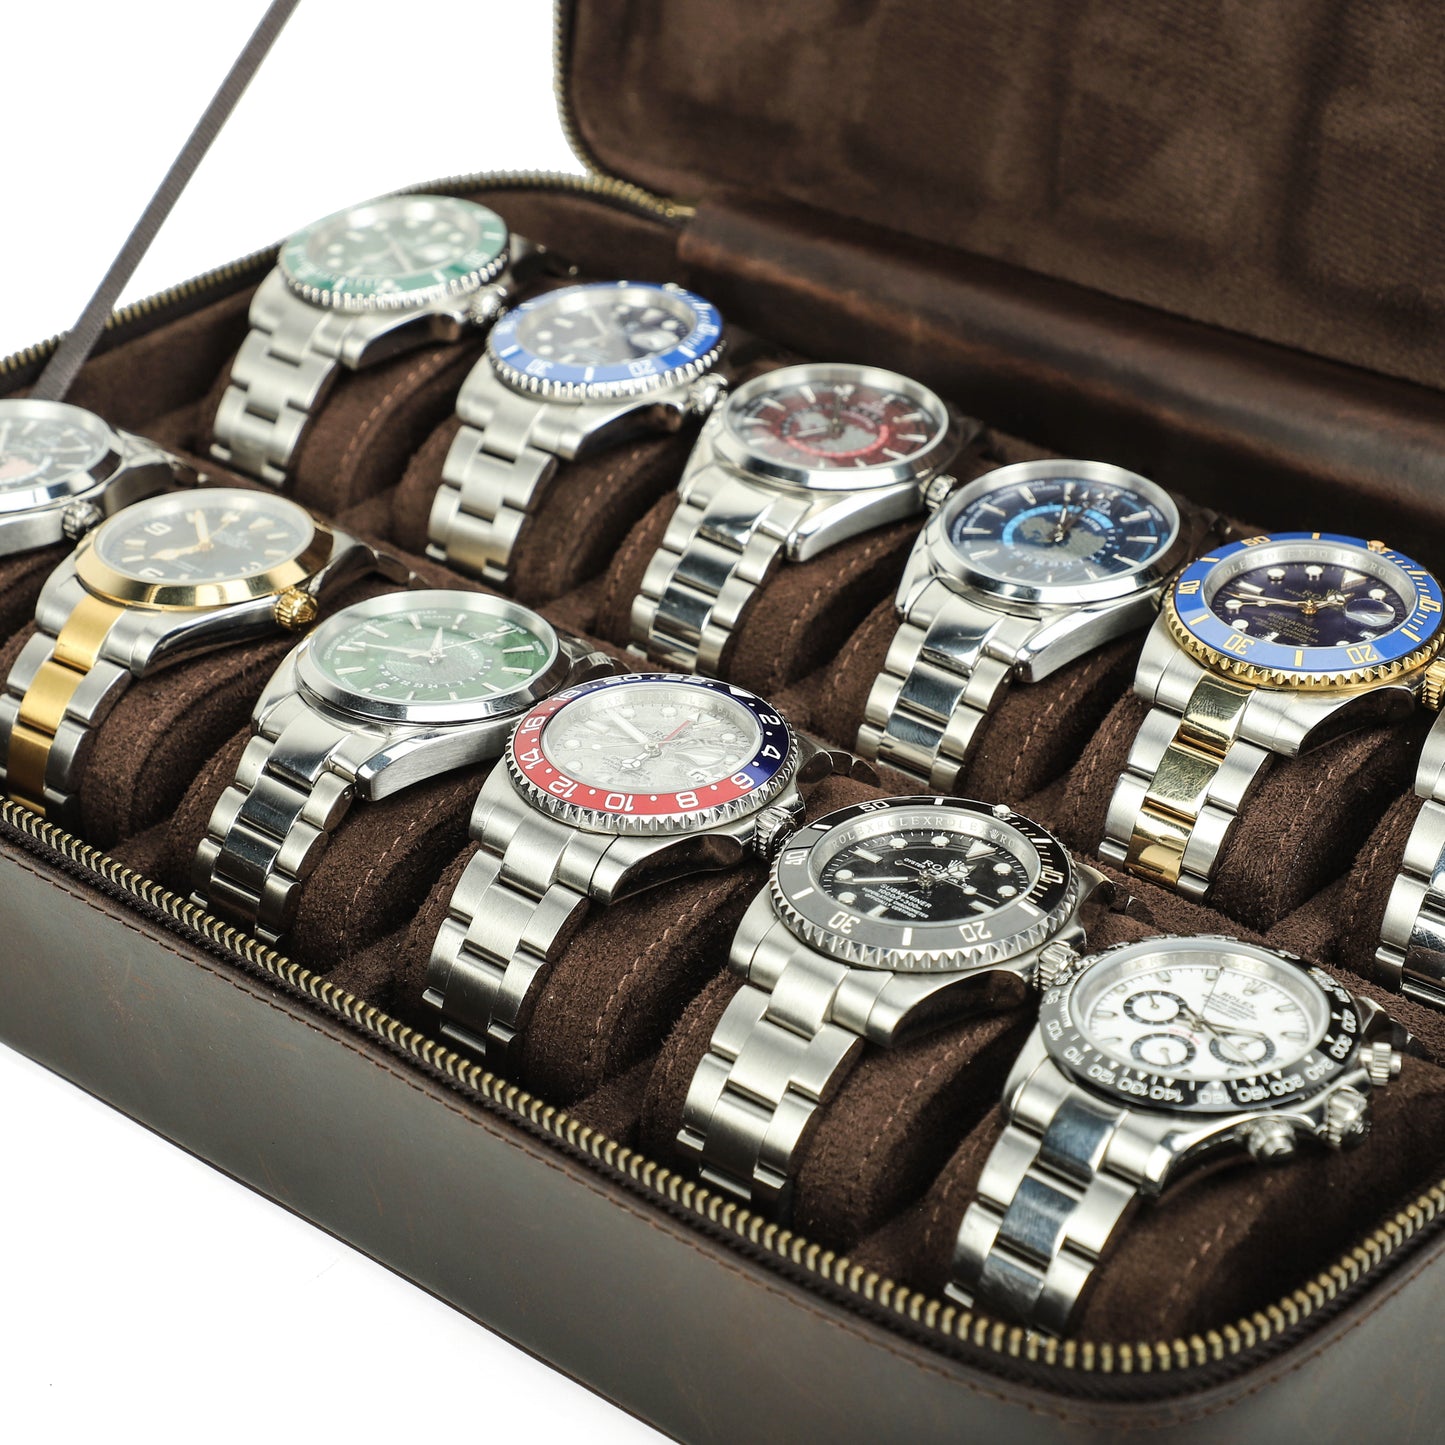 Timezone - Lederen Horloge Opbergdoos voor 12 Horloges